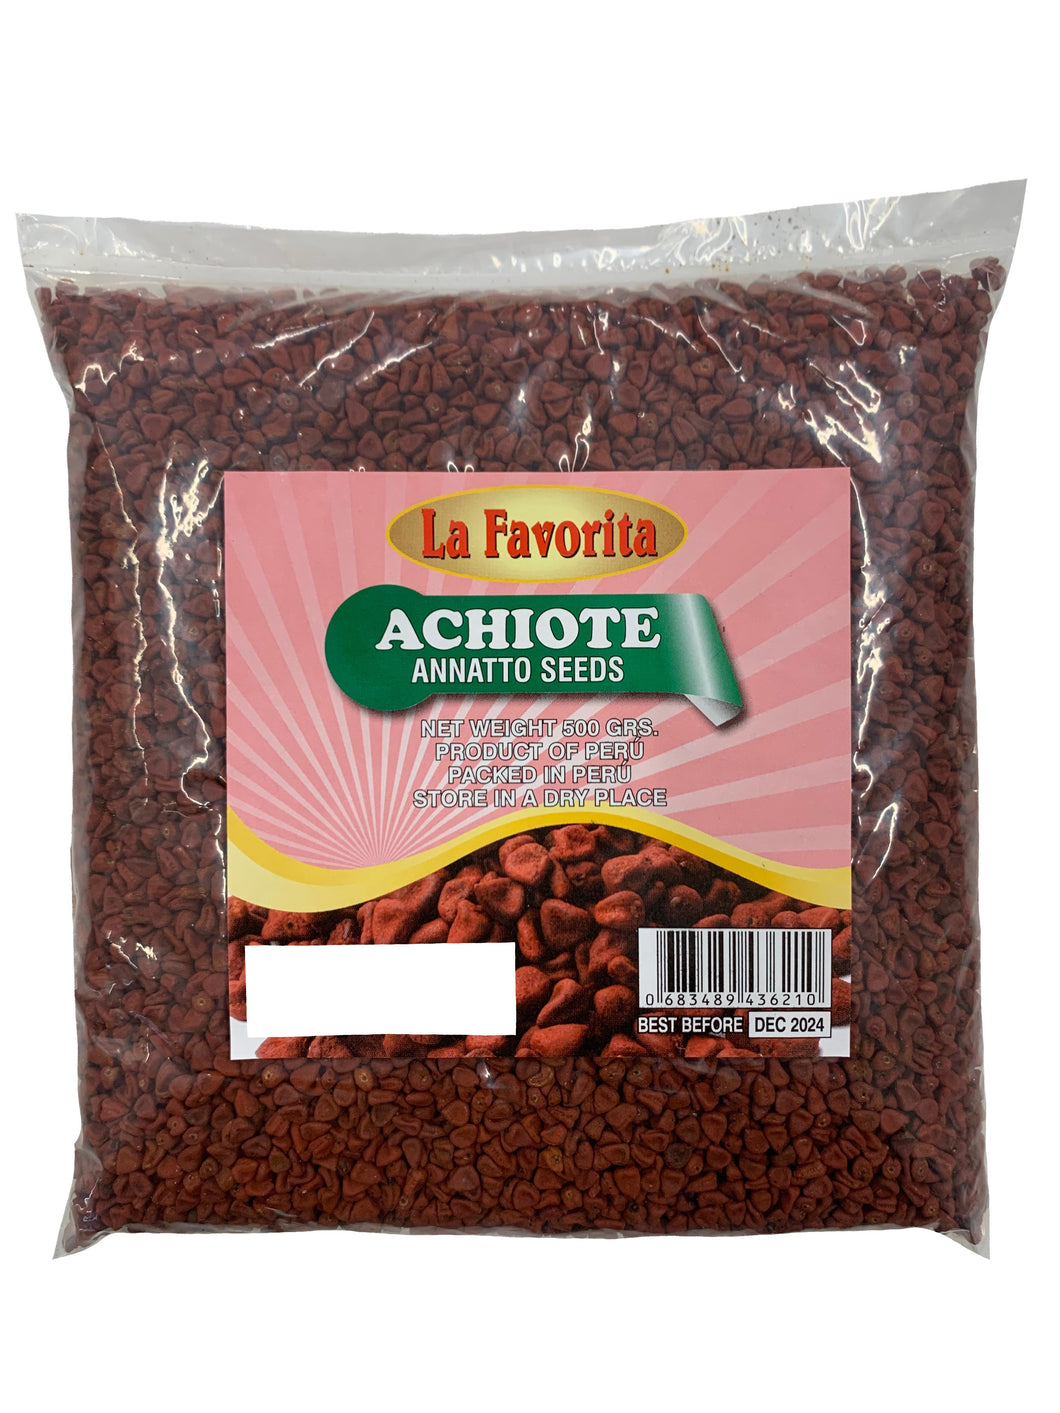 La Favorita Annatto Seeds - Achiote 500g